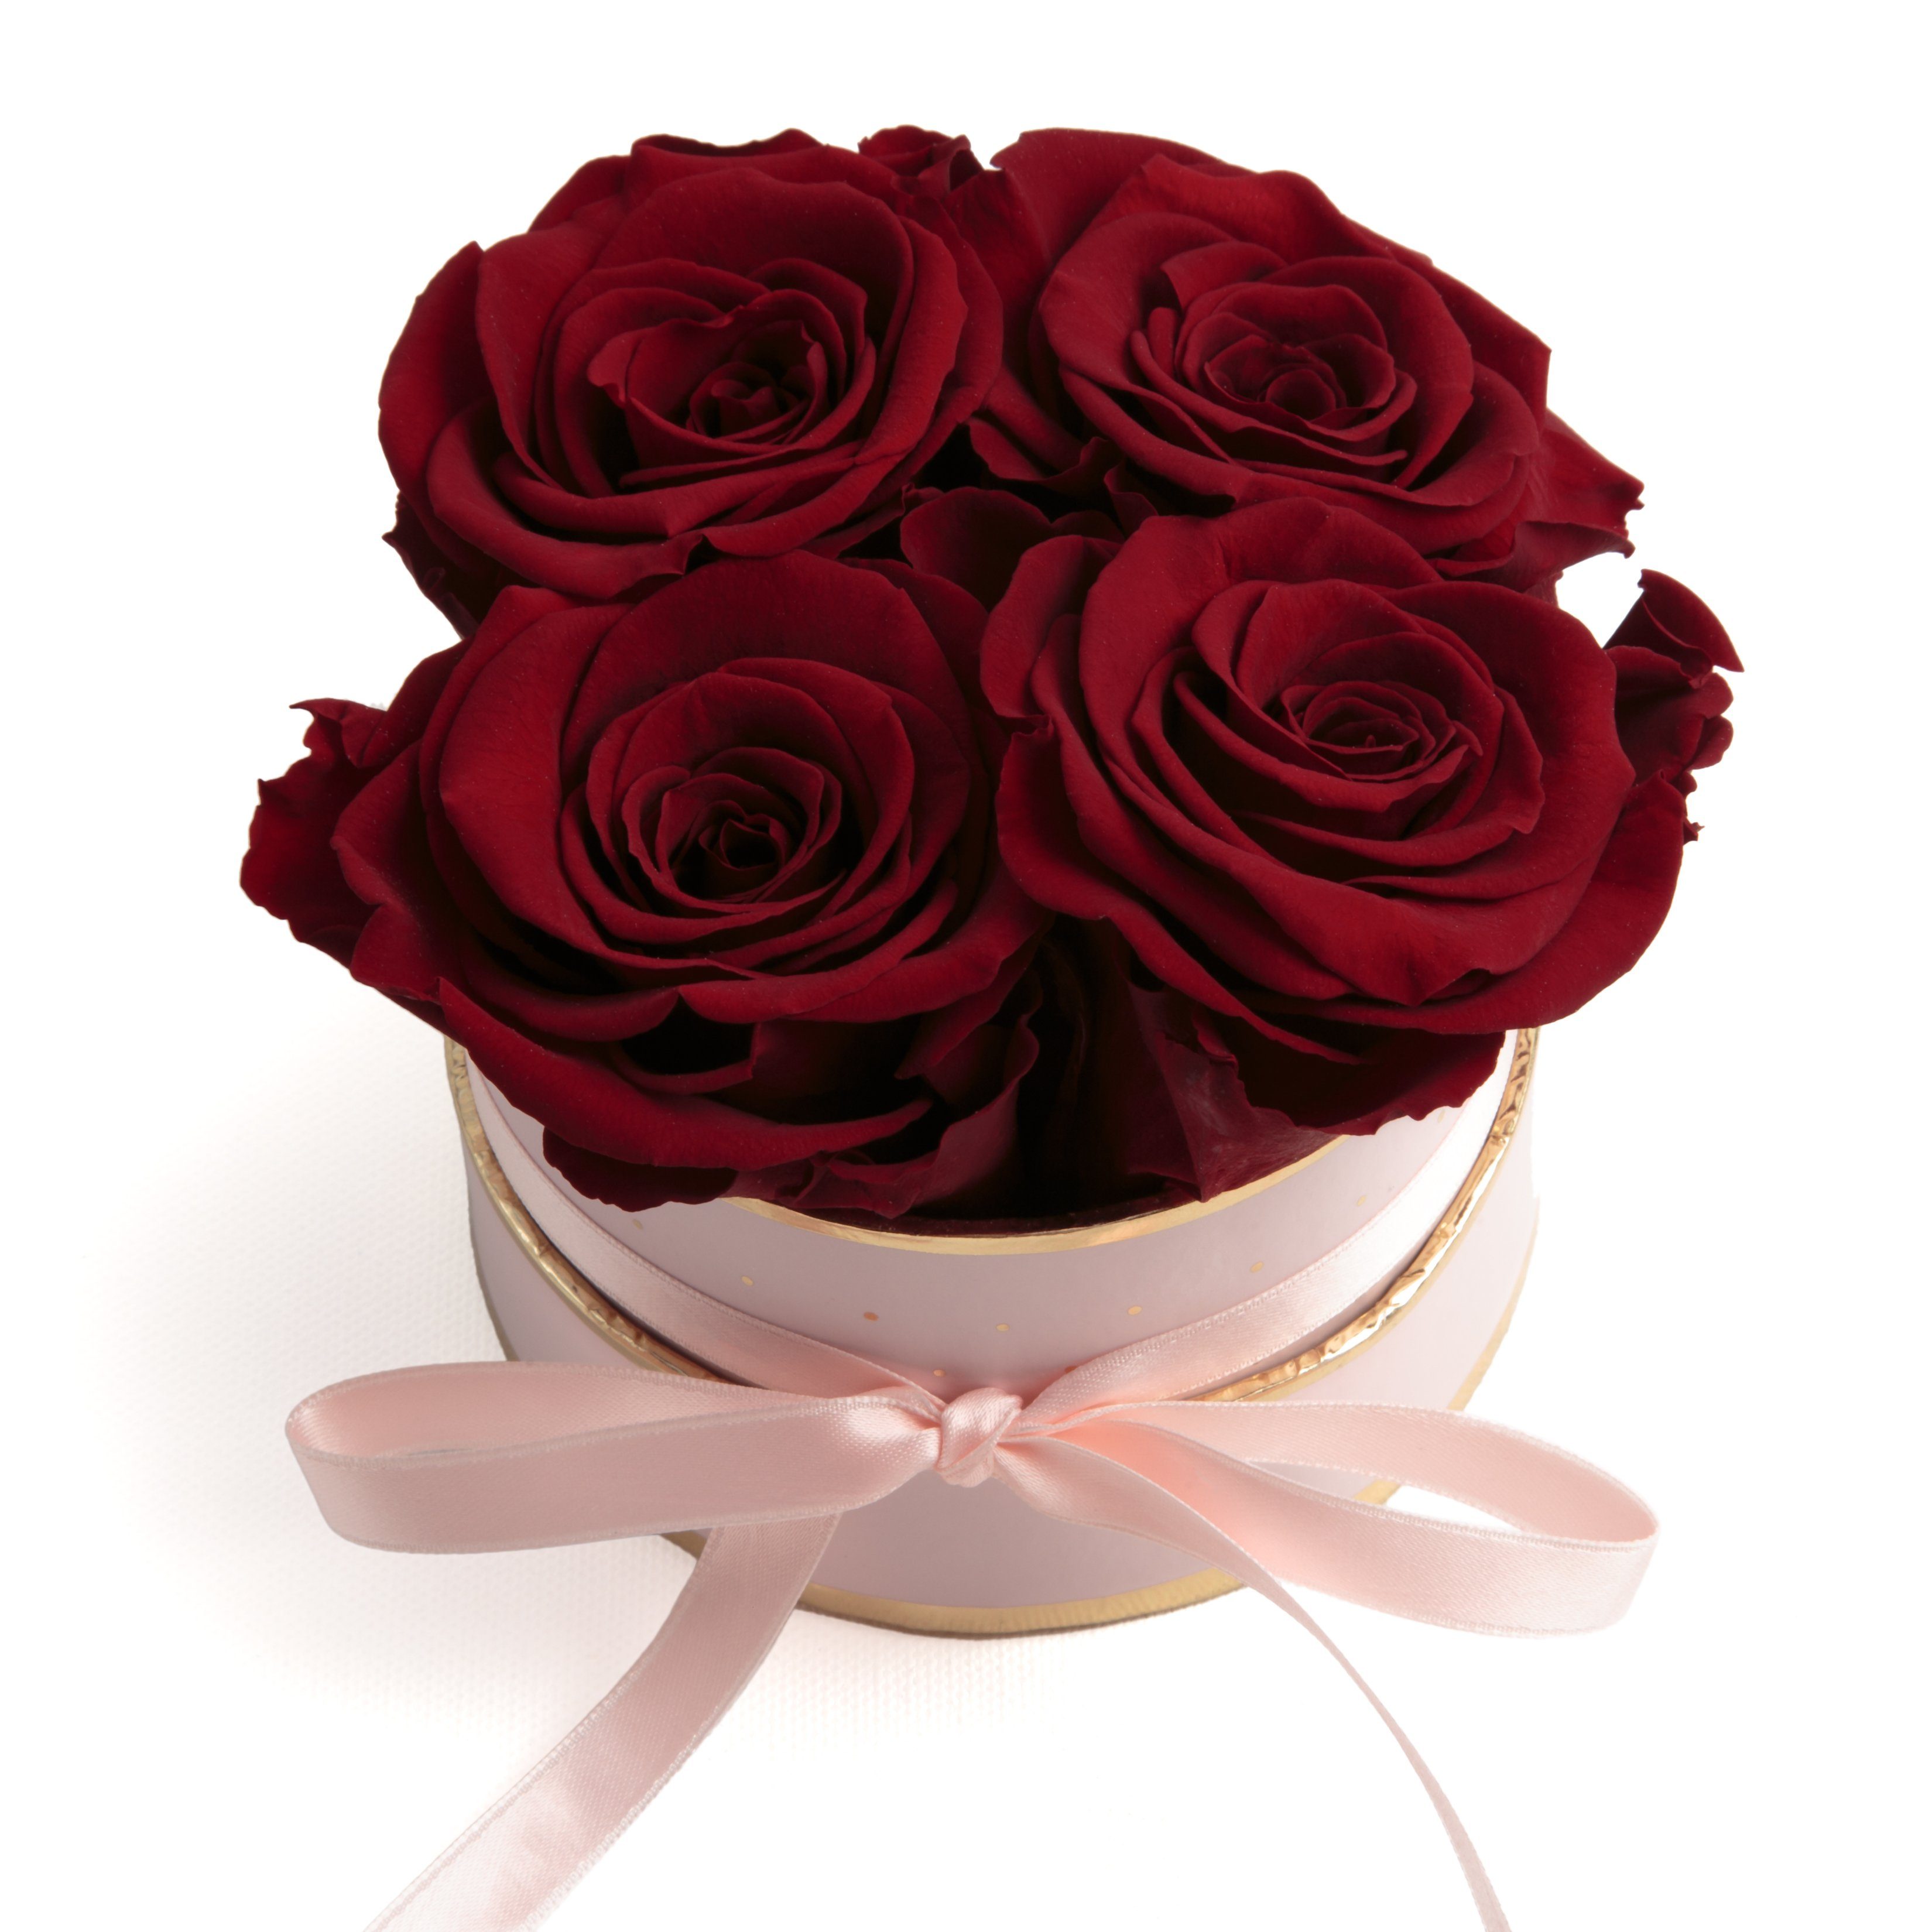 ROSEMARIE Infinity SCHULZ Höhe konservierte Kunstblume cm, echte Rosen Heidelberg, Rose, 4 Rosenbox rund Frauen für Geschenk 10 konservierte Burgundy rosa Rosen